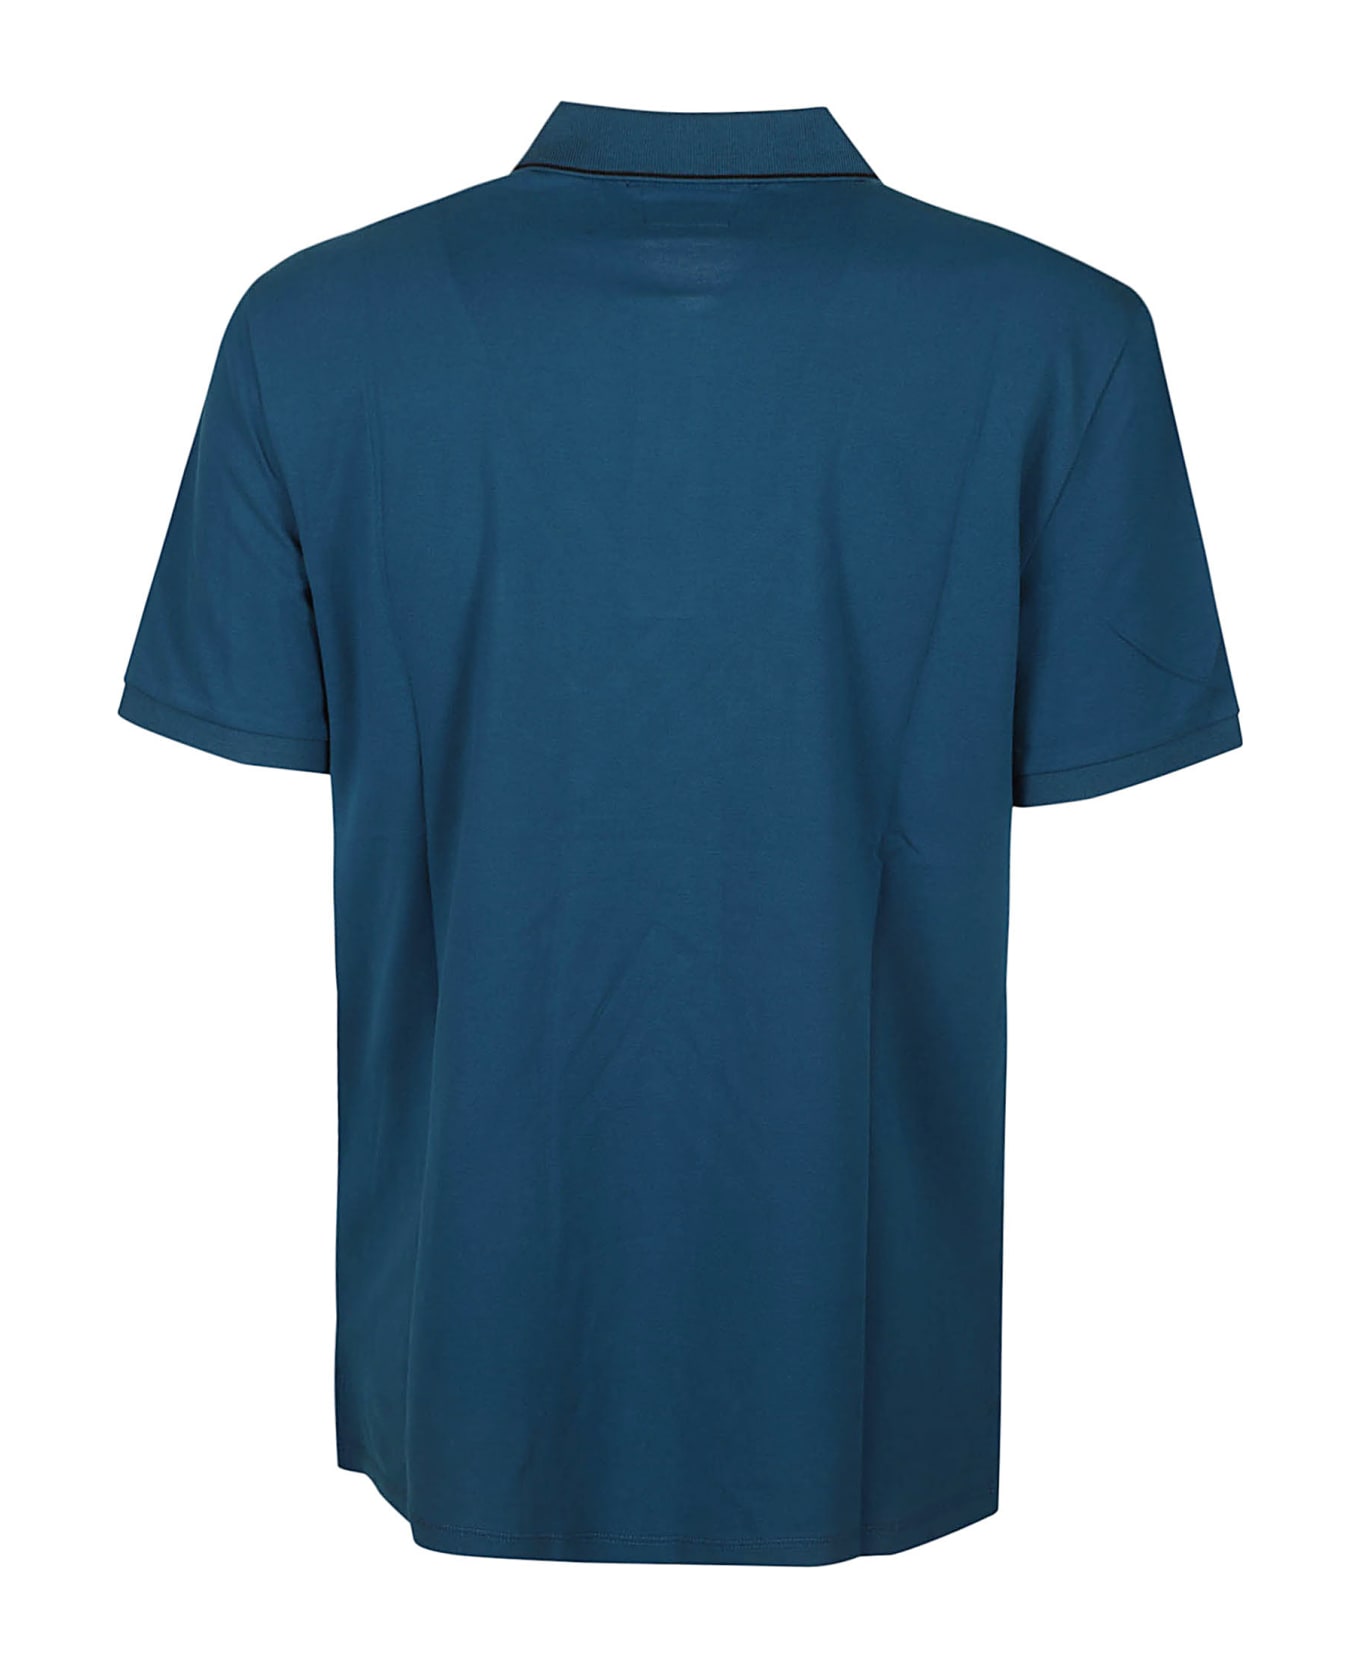 C.P. Company Stretch Piquet Polo Shirt - INK BLUE